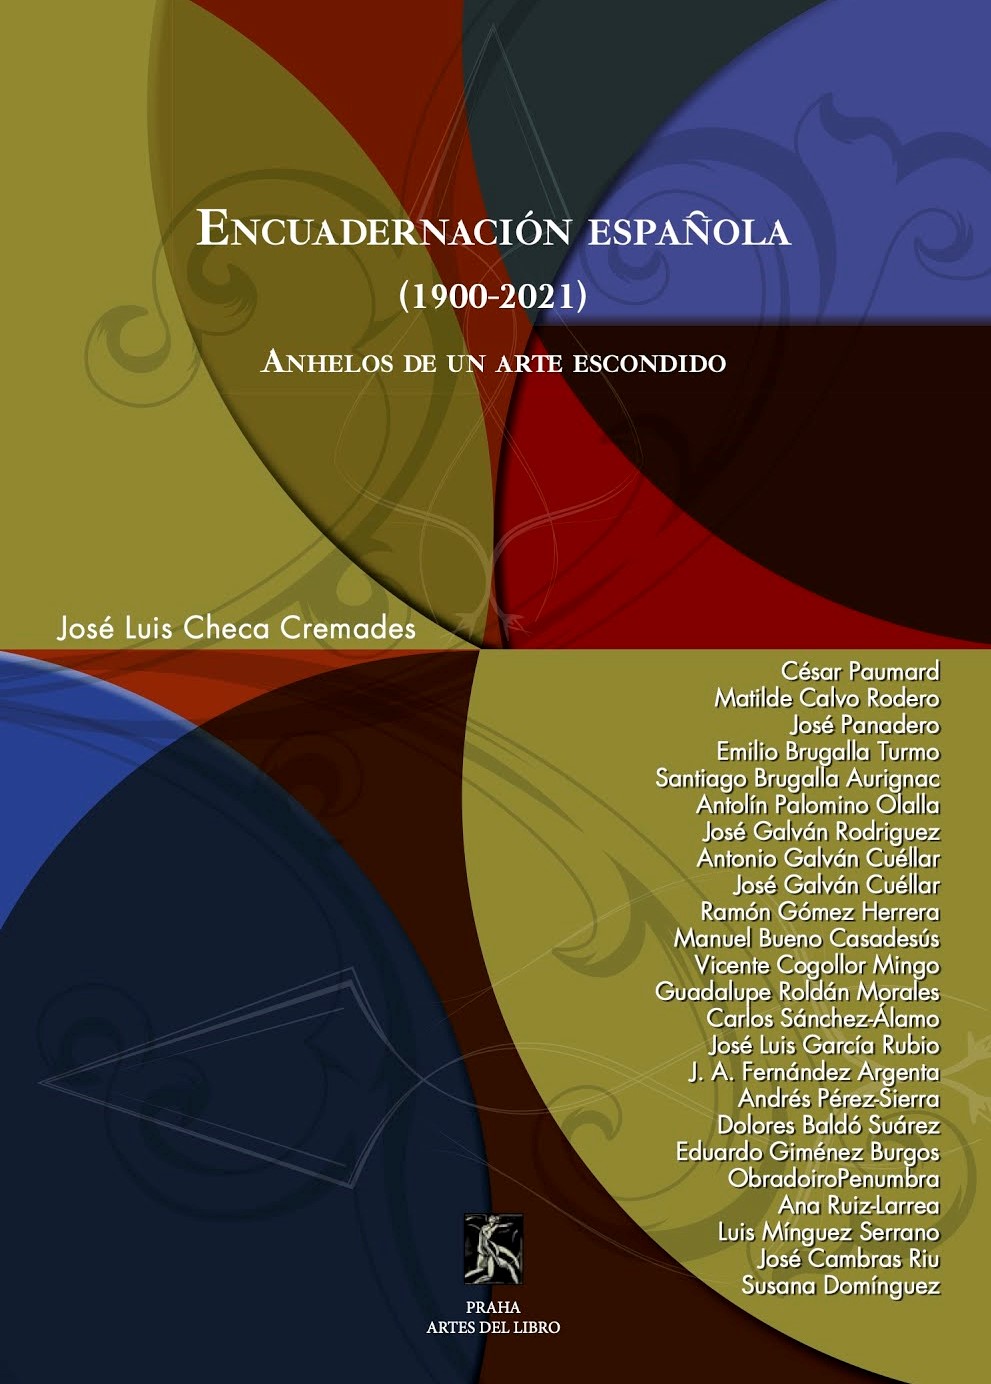 Encudernación española (1900-2021)